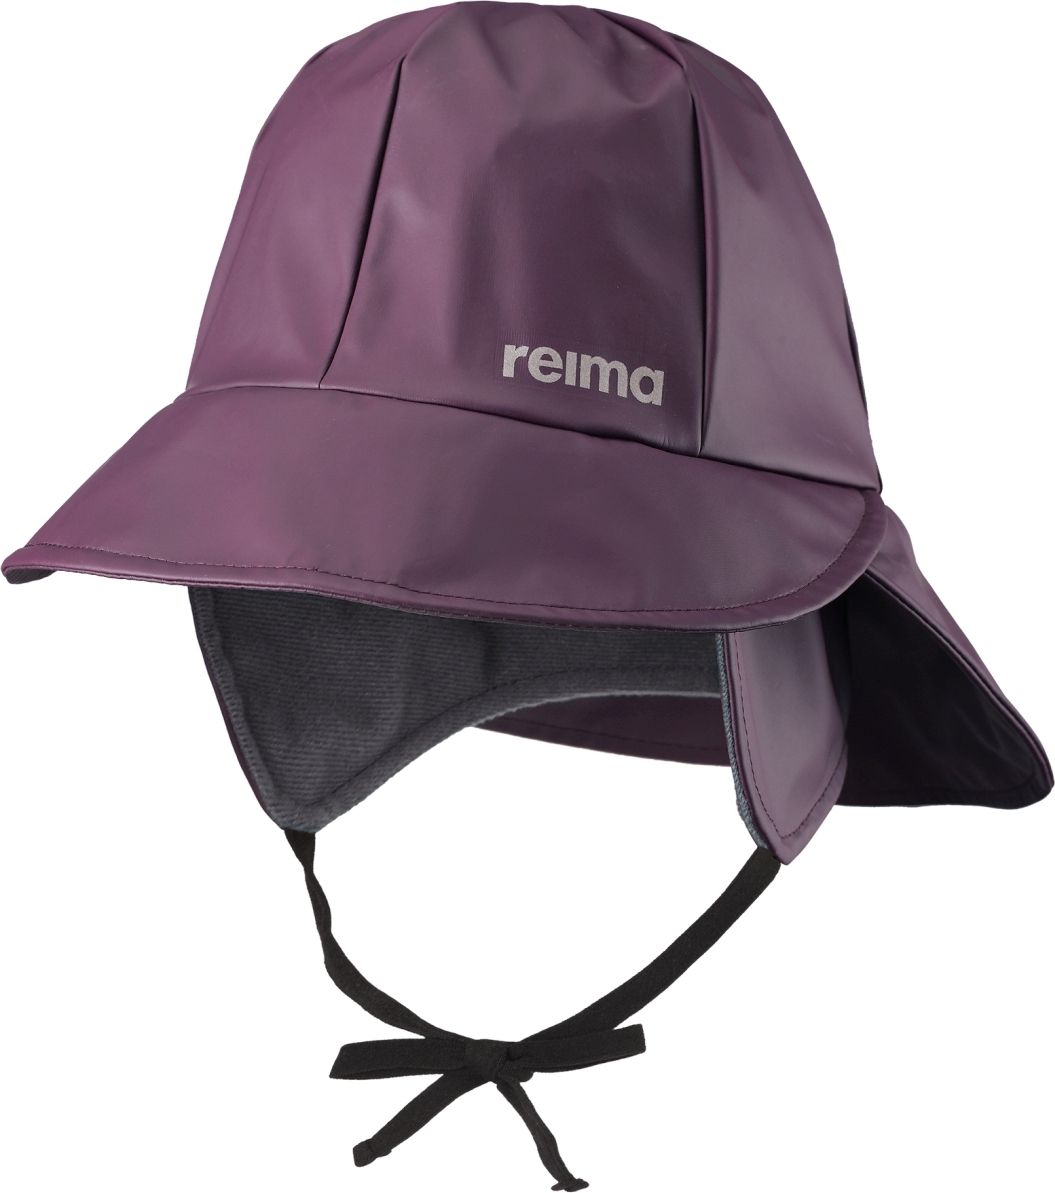 Reima Rainy - deep purple 48 - obrázek 1